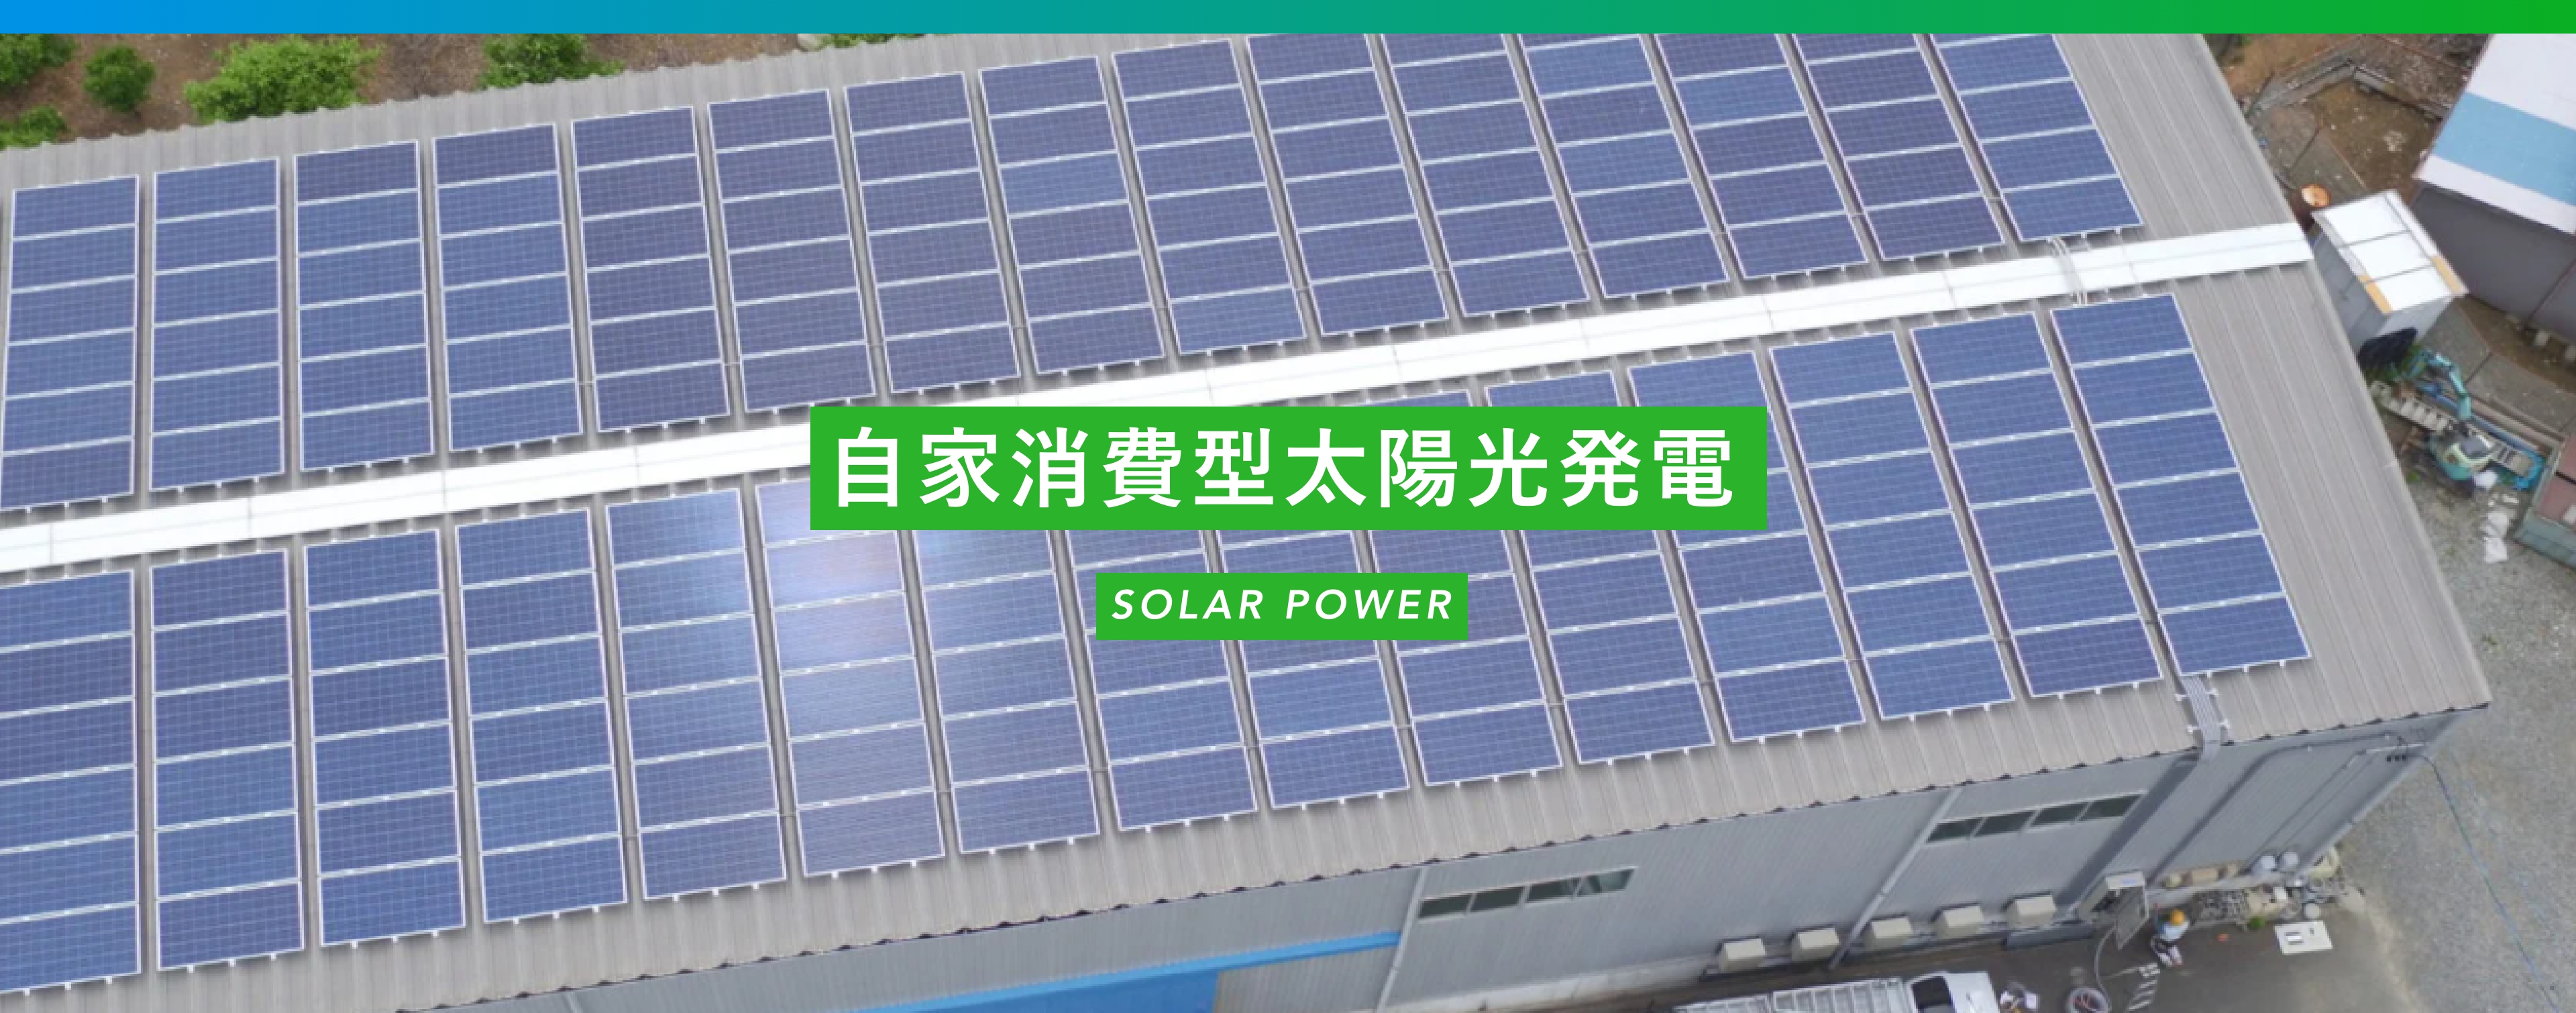 自家消費型太陽光発電 SOLAR POWER